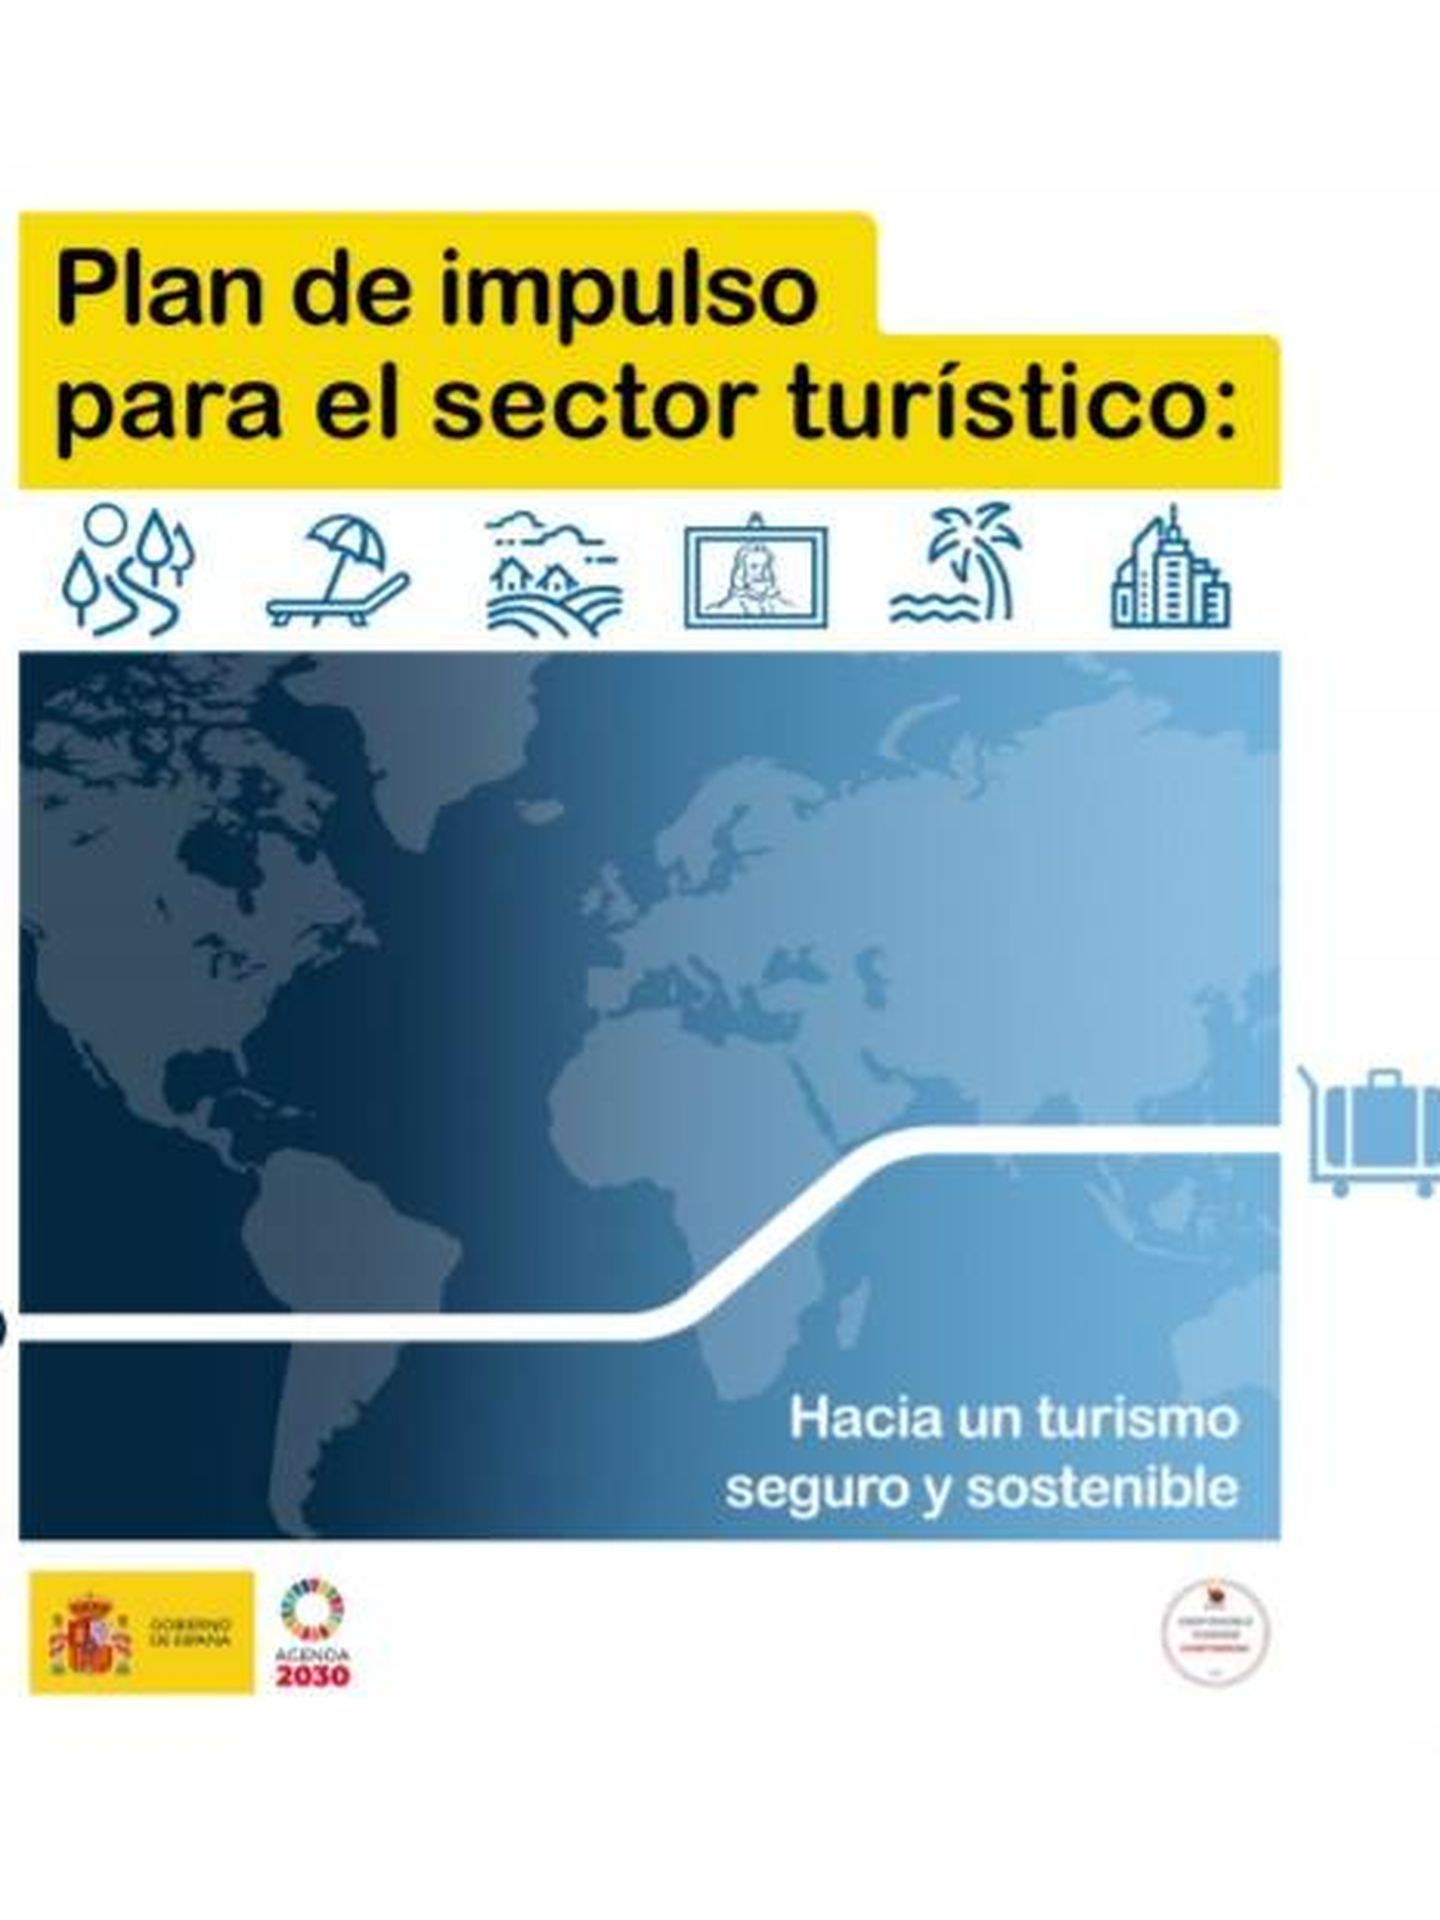 Consulte aquí en PDF el plan del impulso para el sector turístico diseñado por el Gobierno de España. 